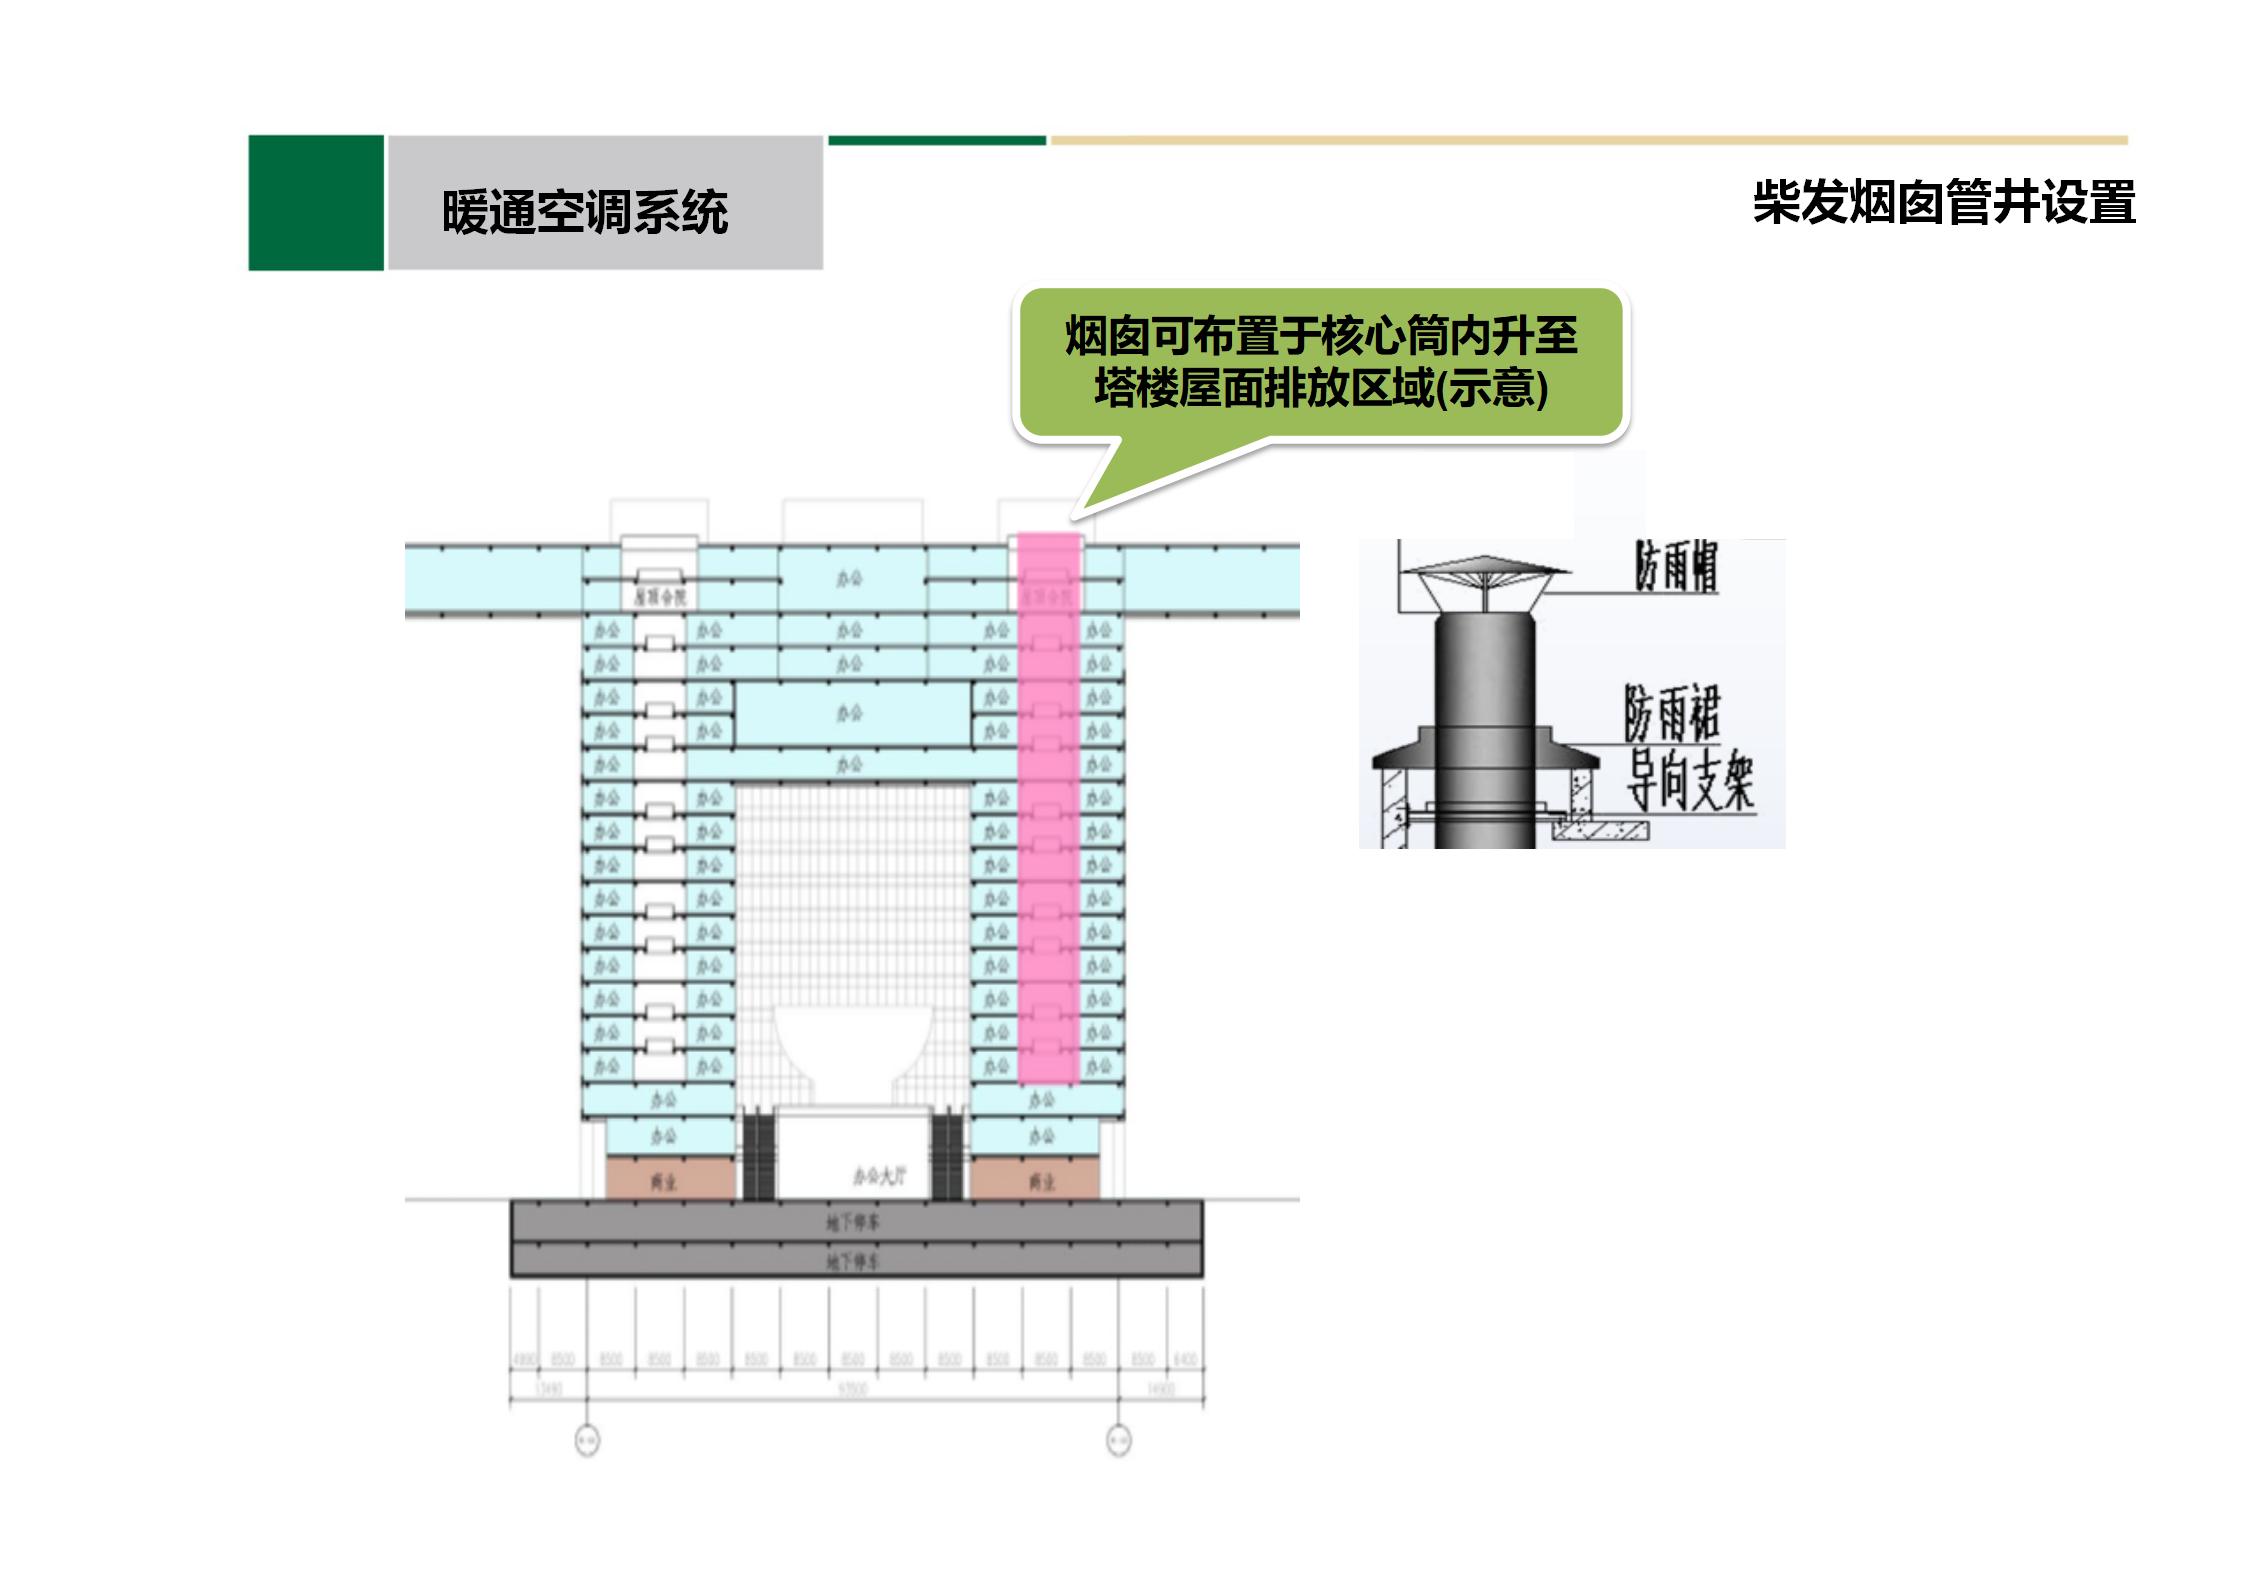 中建机电专业方案设计PPT汇报插图(29)